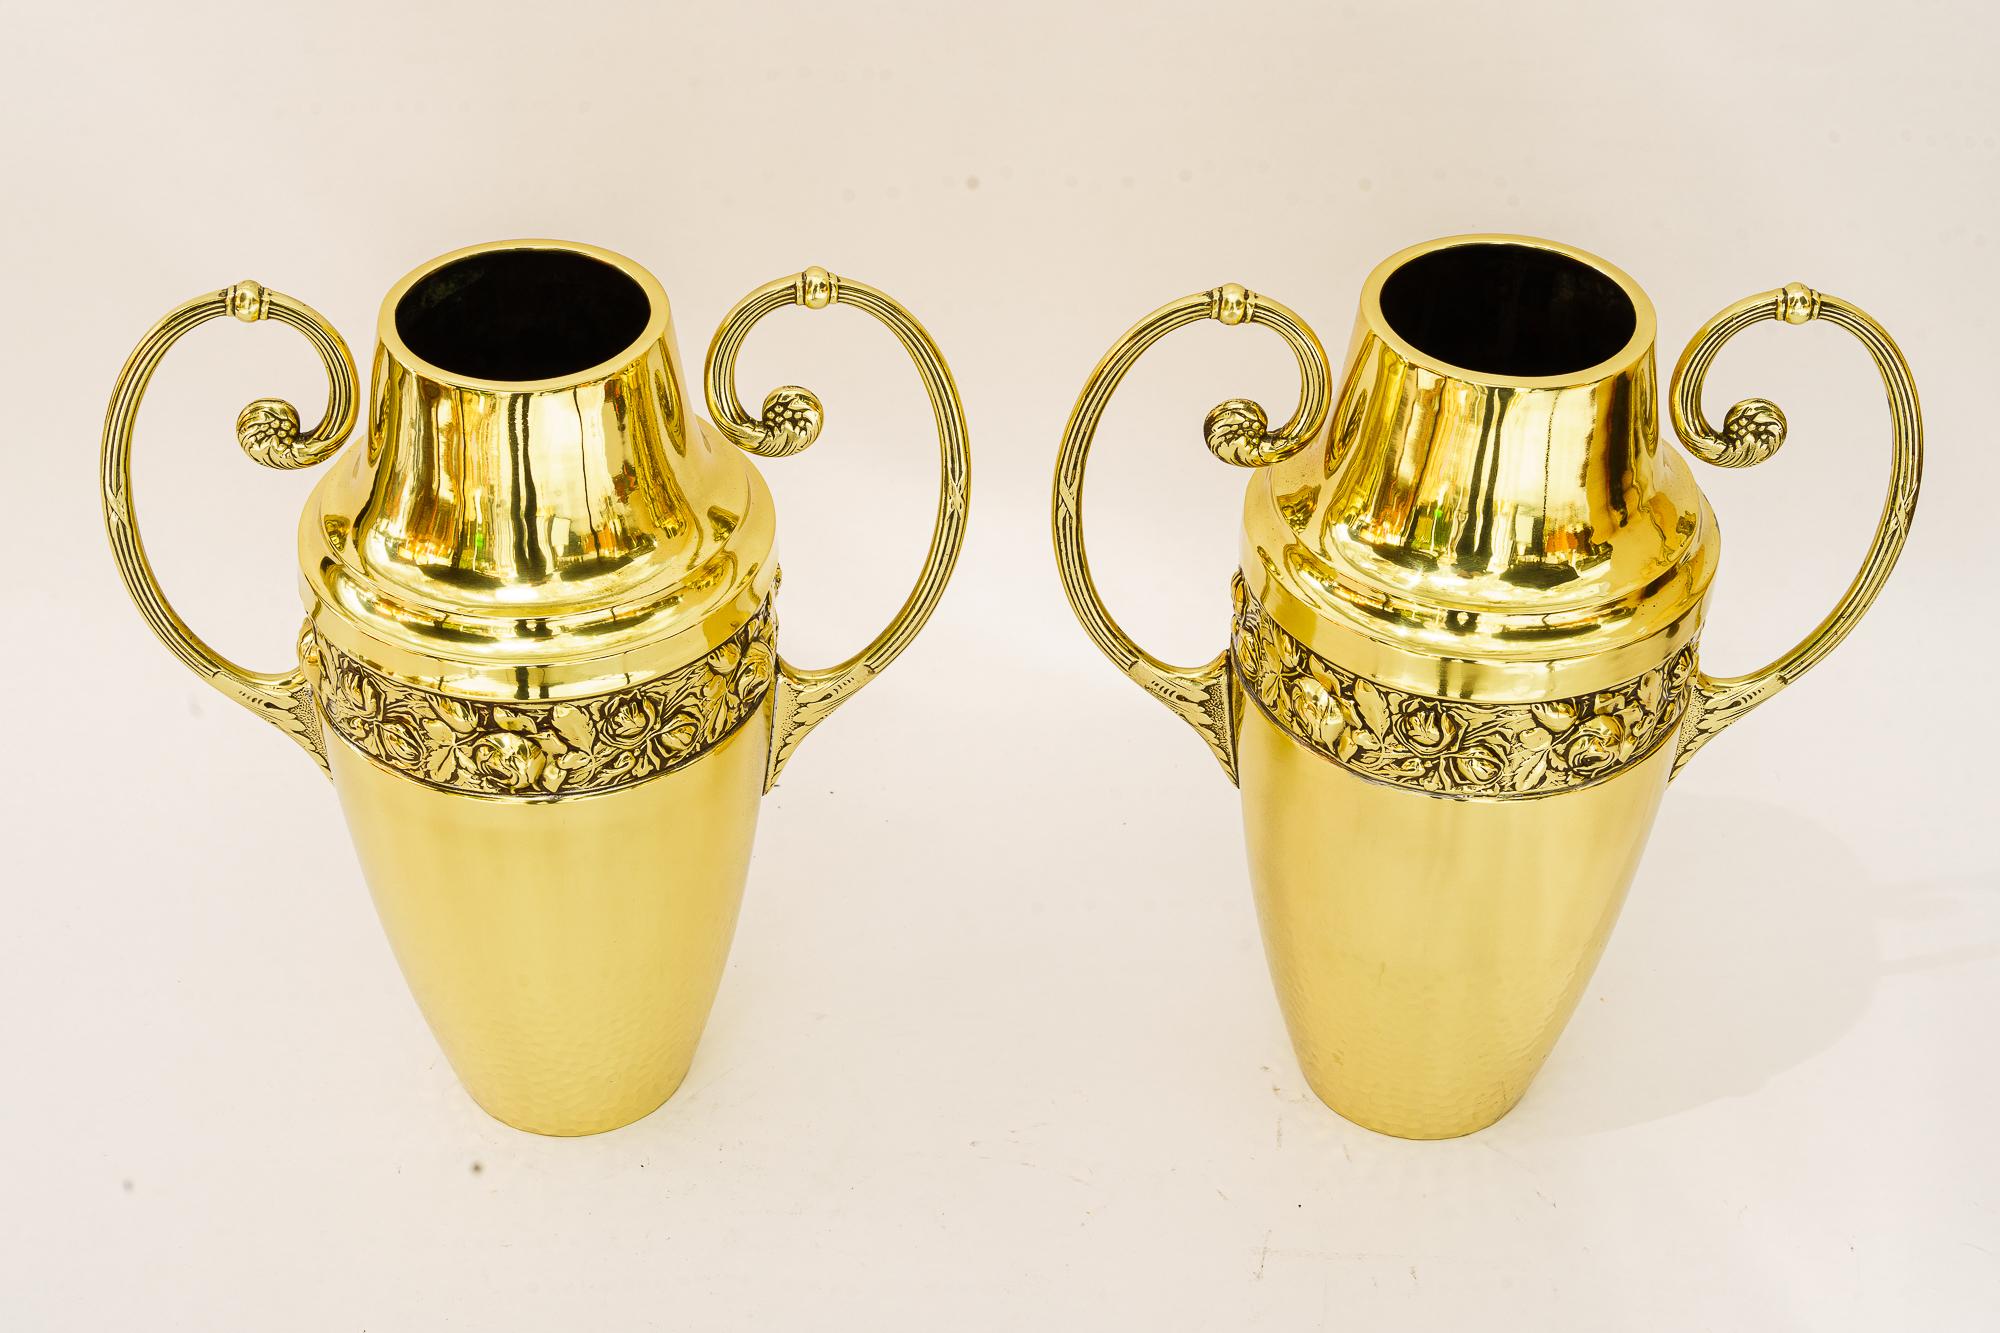 2 Brass jugendstil vases vienna around 1908
Brass polished and stove enameled
